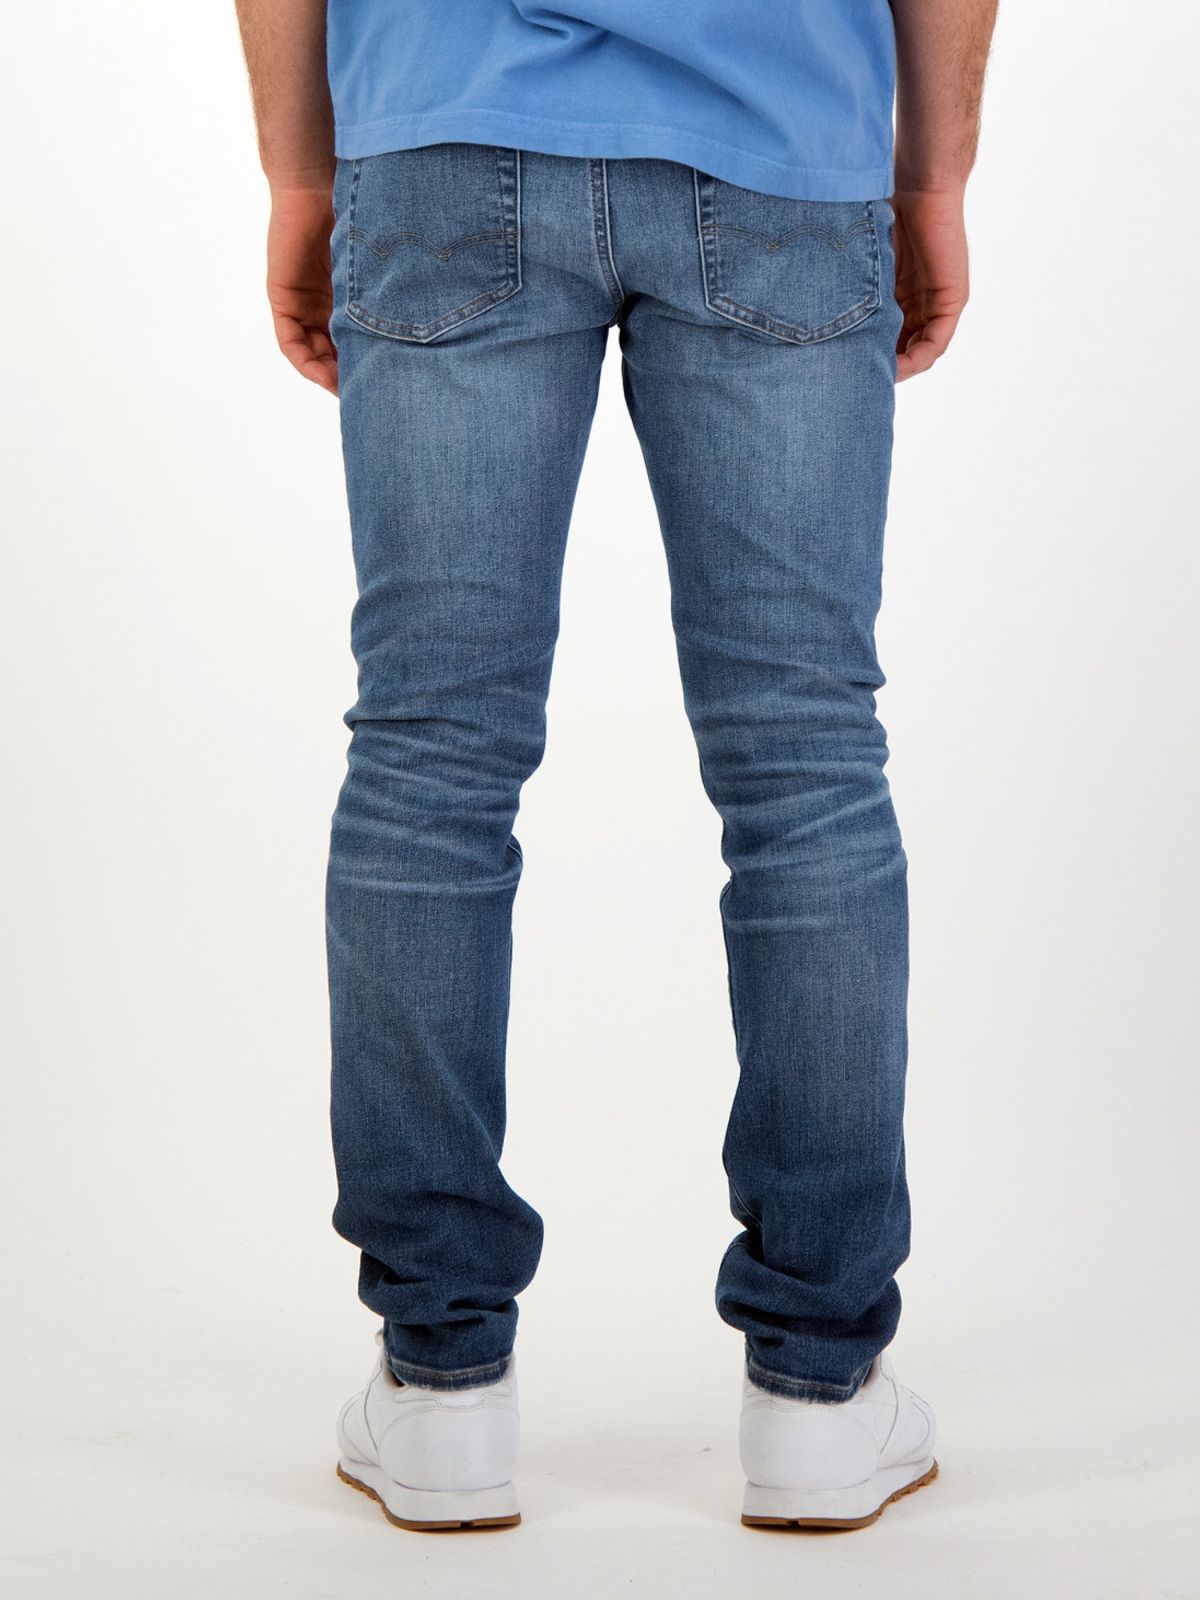  ג'ינס עם שפשופים בגזרת Slim  של AMERICAN EAGLE